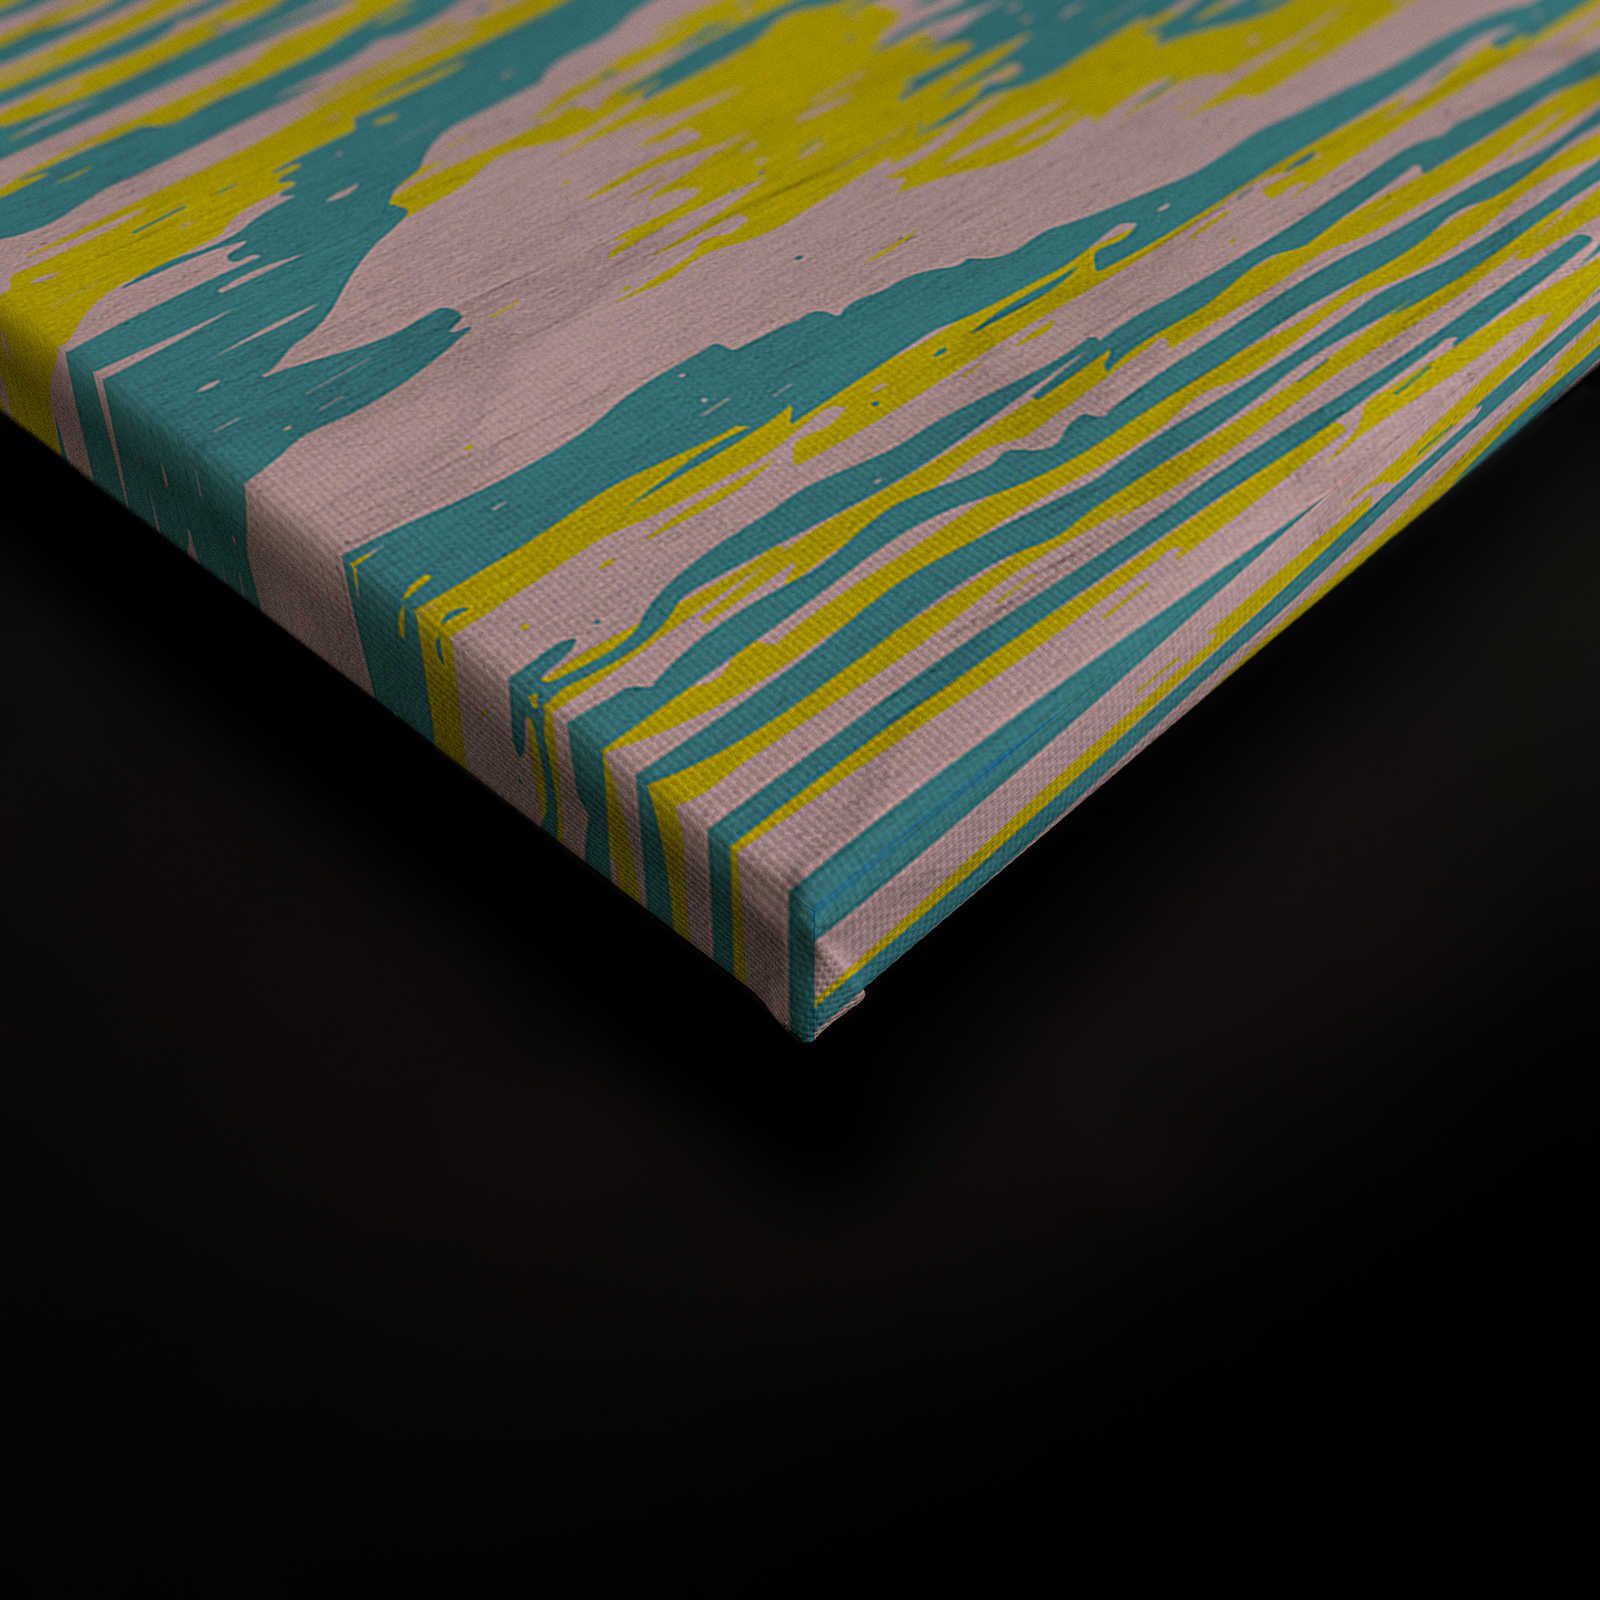             Bounty 3 - Cuadro en lienzo Amarillo y Azul con diseño imitación madera - 0,90 m x 0,60 m
        